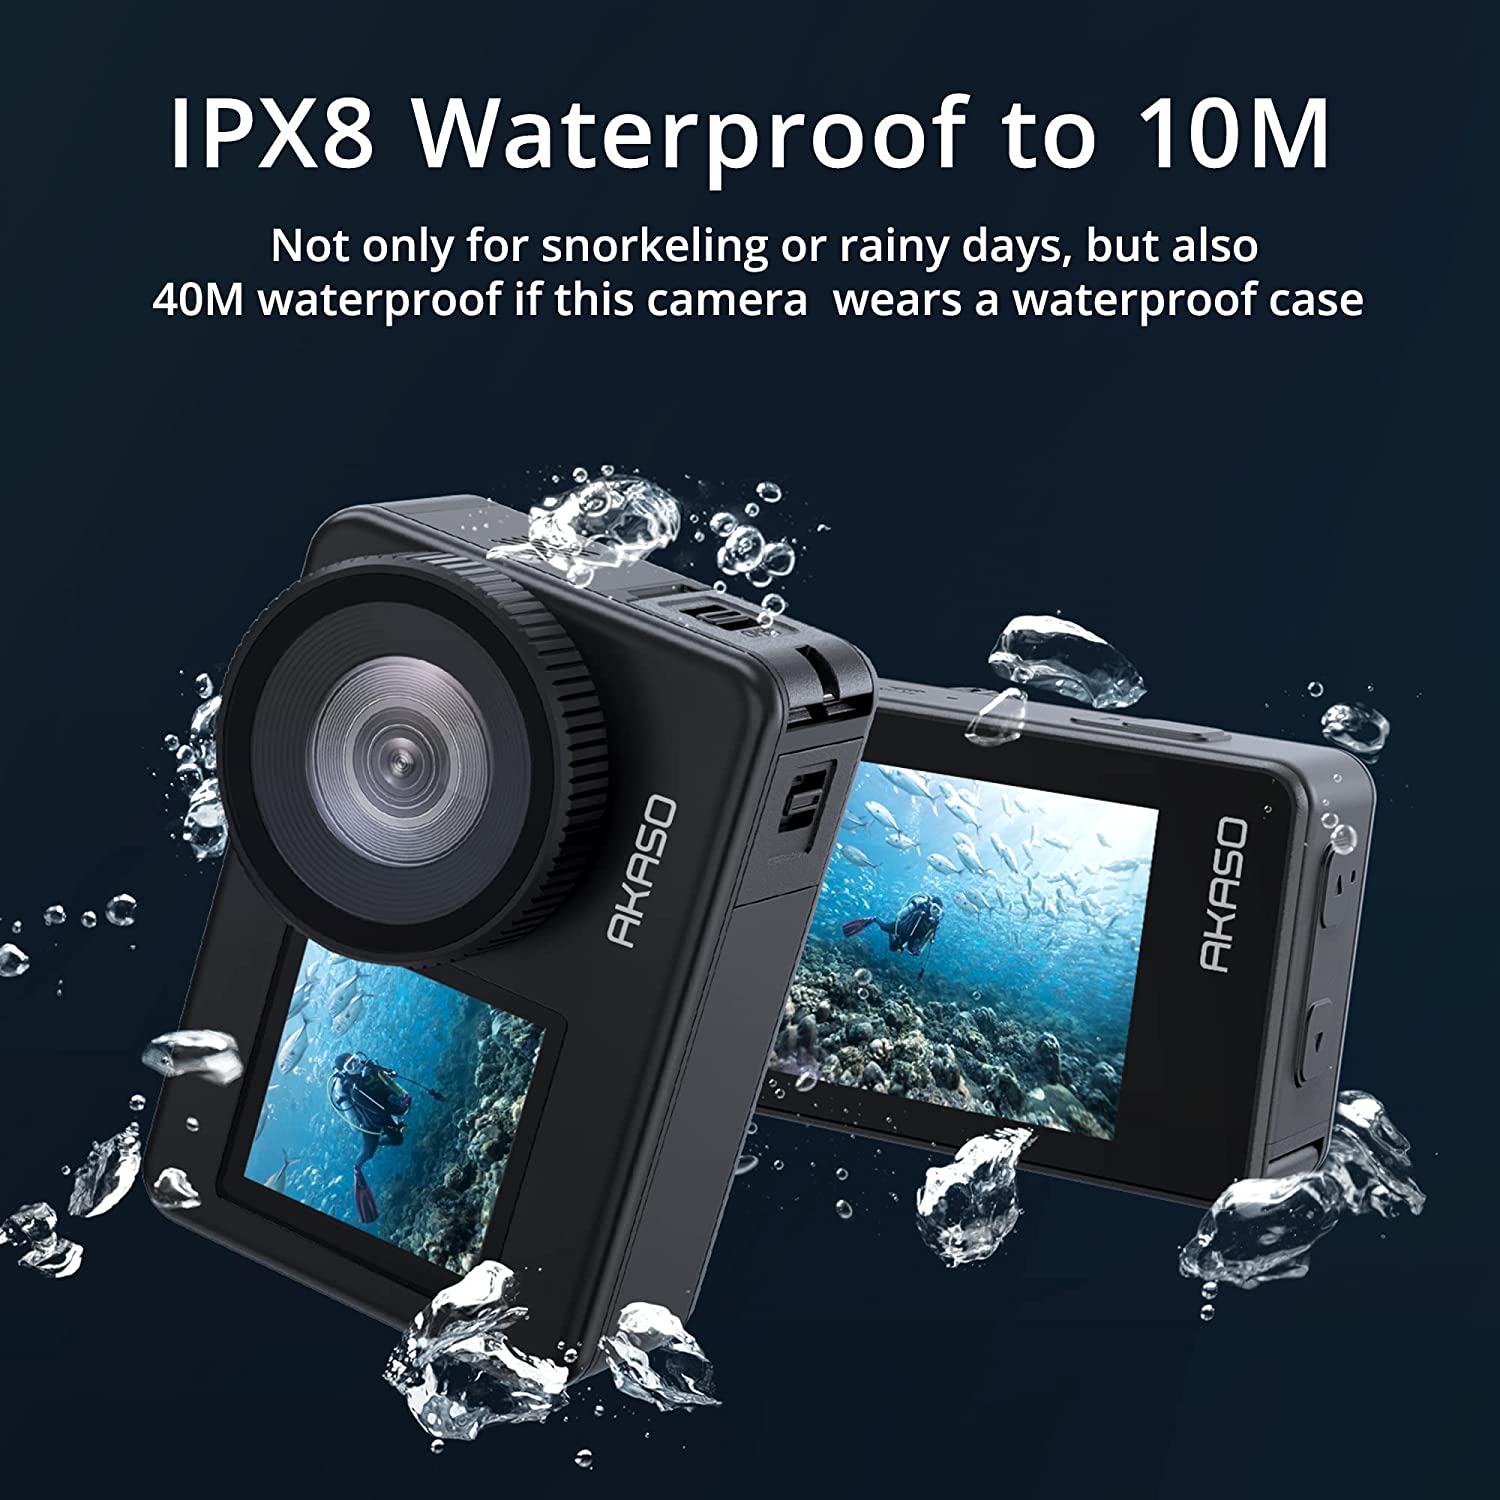 Get The AKASO EK7000 Underwater Camera for Less Than $70 on